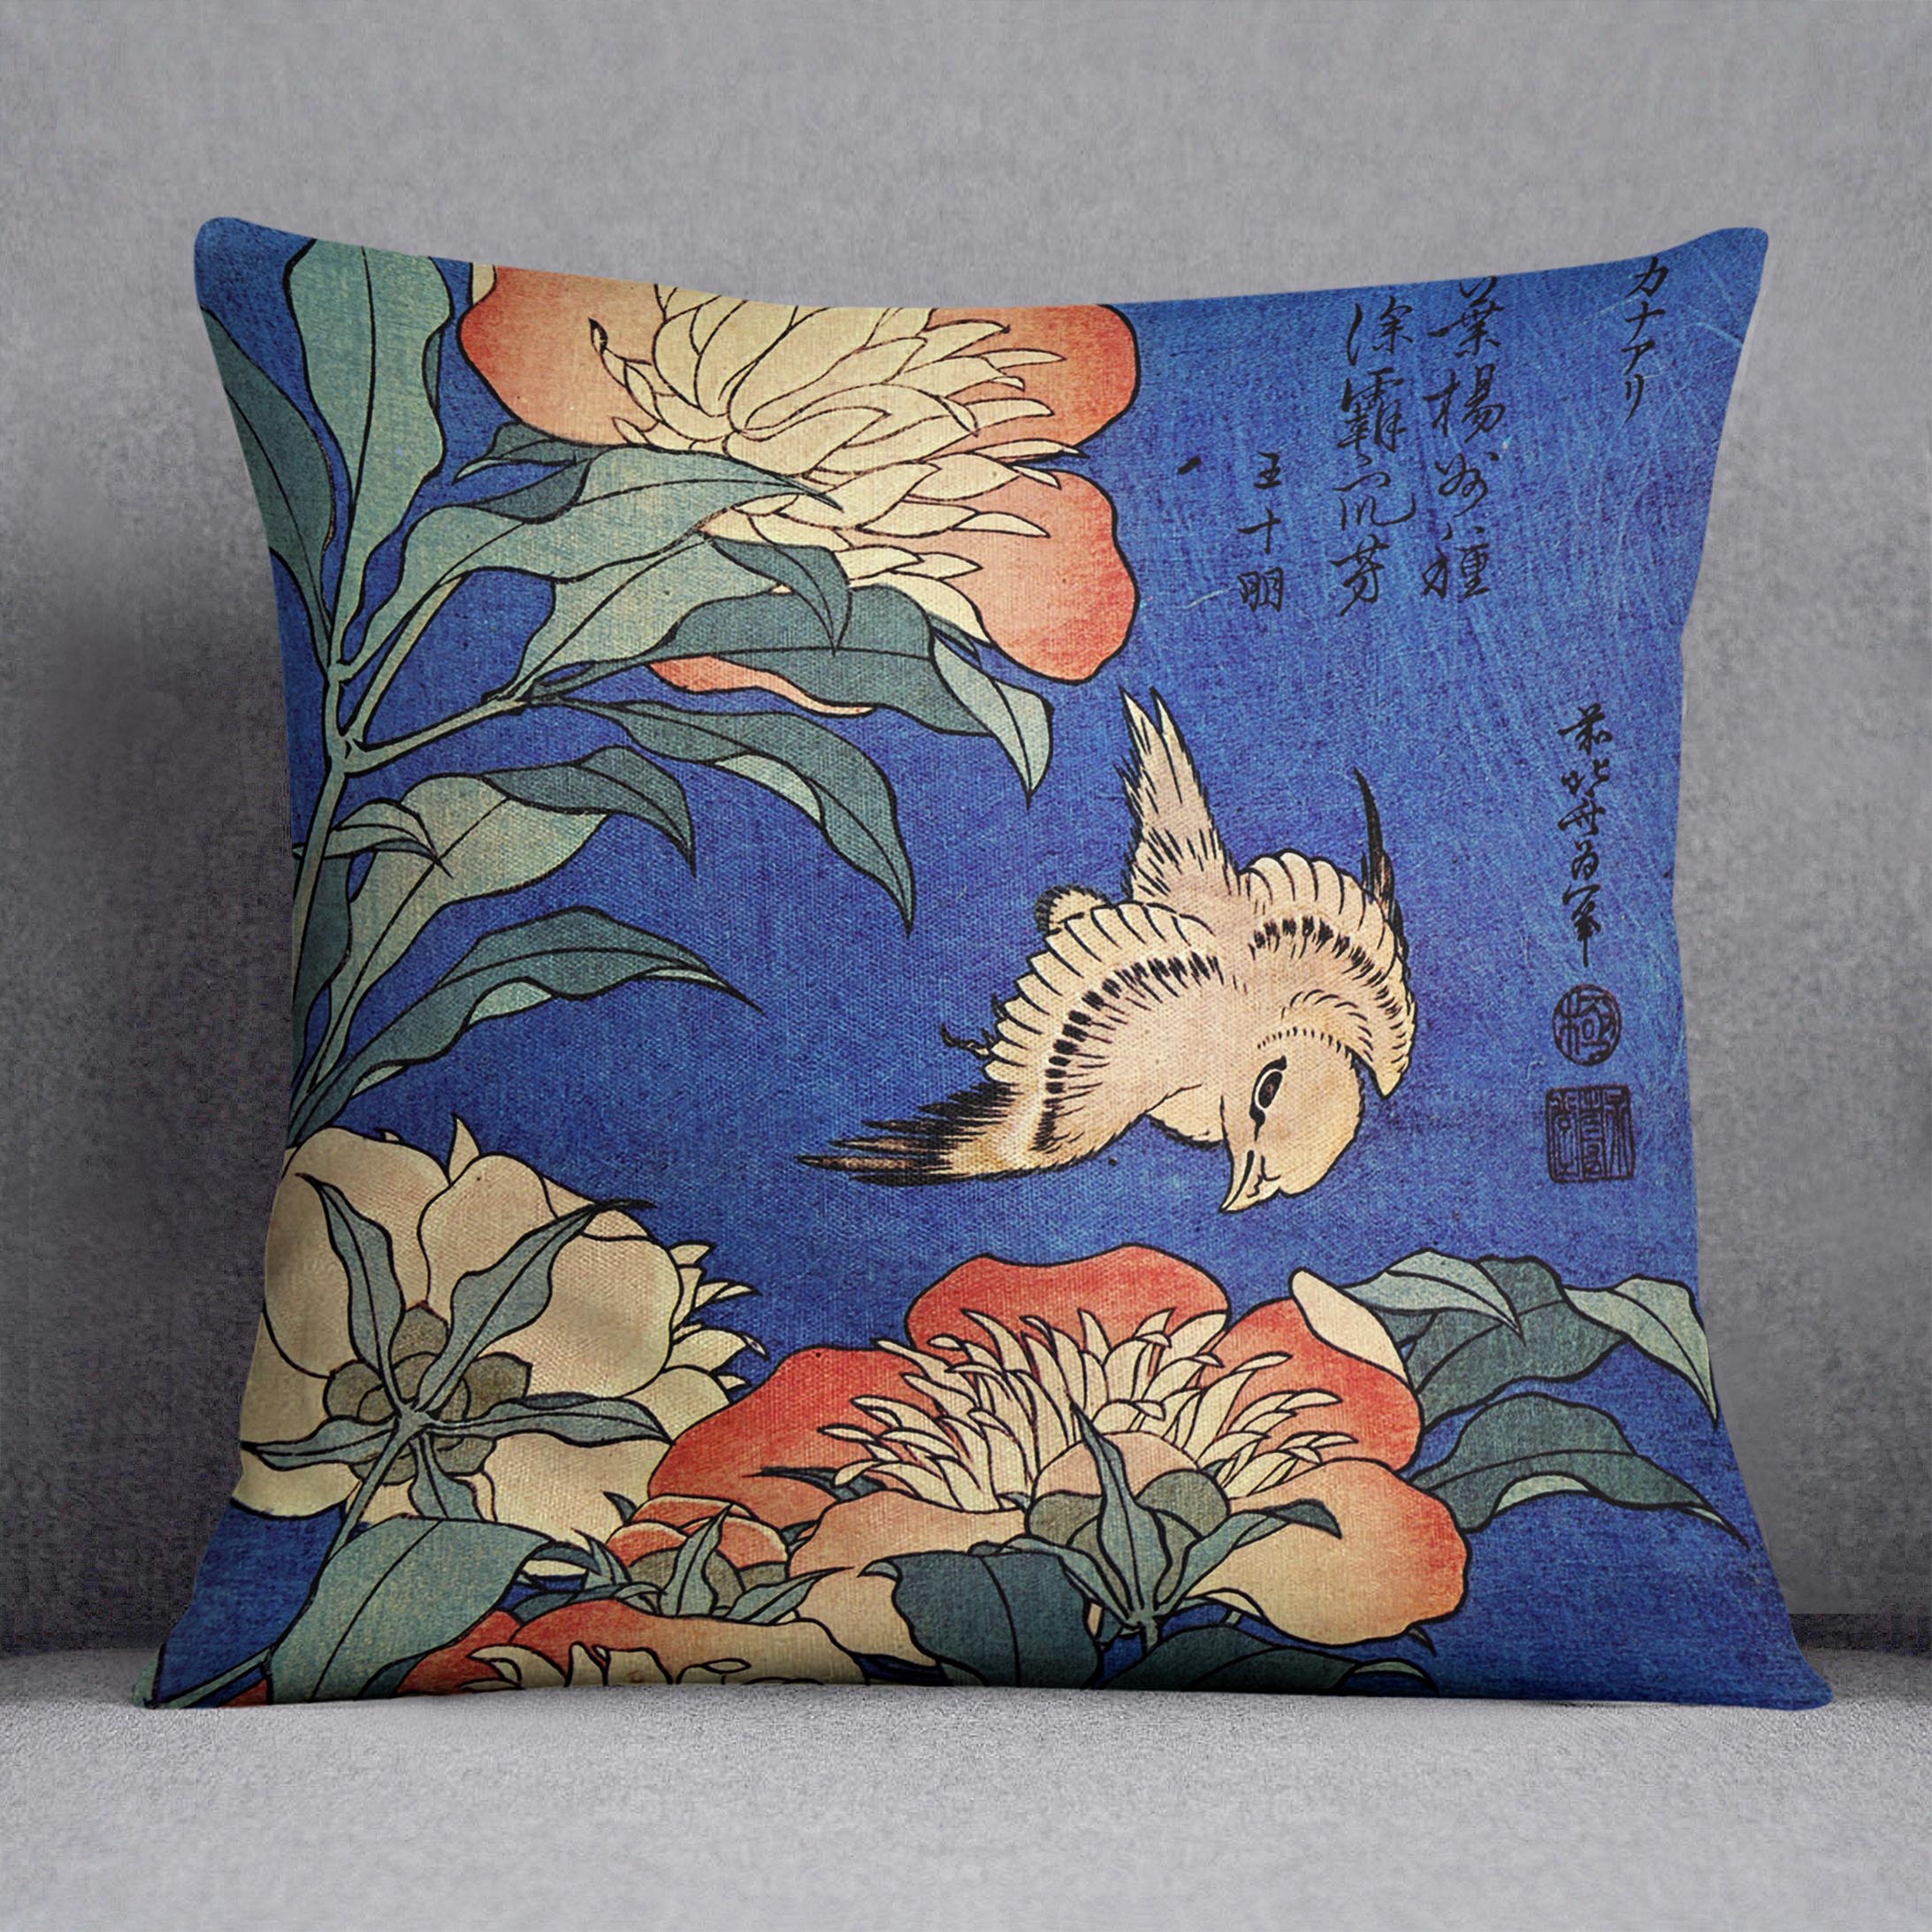 Flowers by Hokusai Cushion